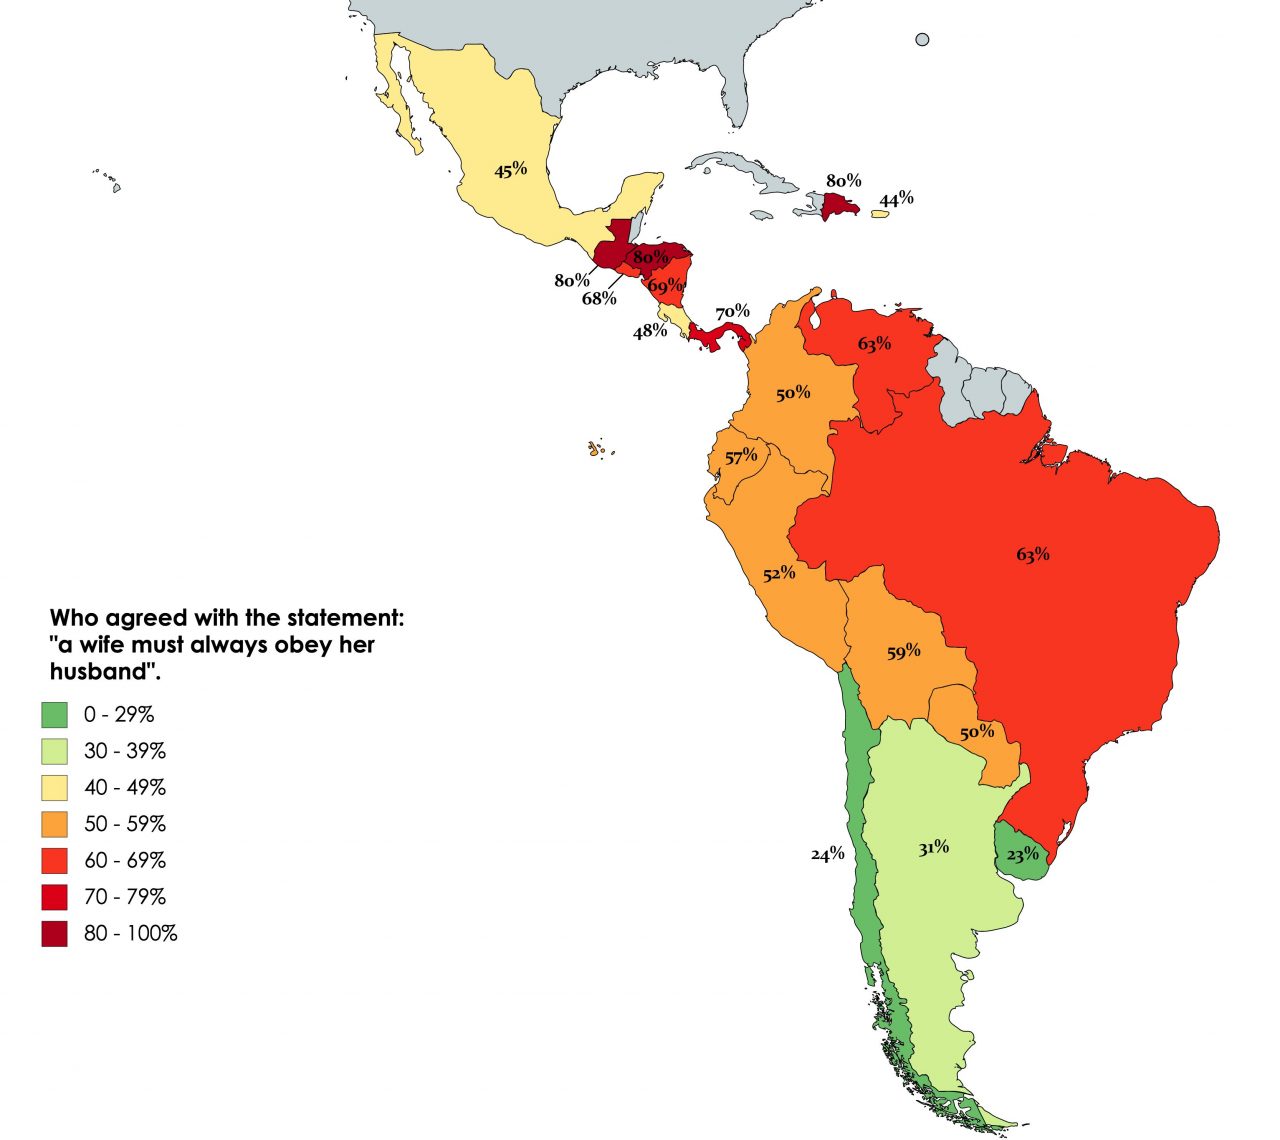 Porcentaje de Latinoamericanos que opinan que las mujeres deben obedecer a sus maridos